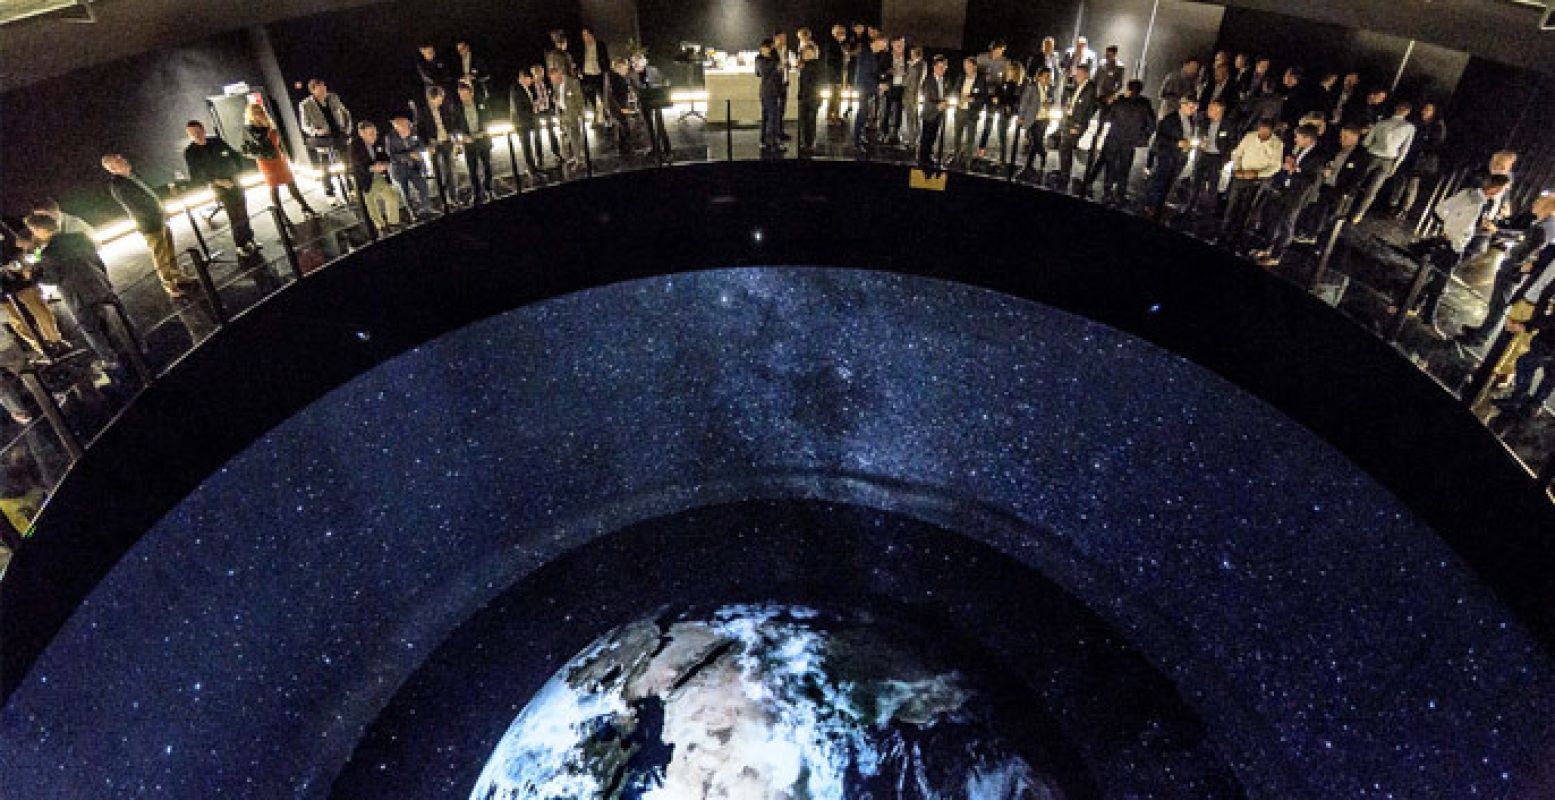 Bezoek het omgekeerde planetarium Columbus Earth Theater in Kerkrade.